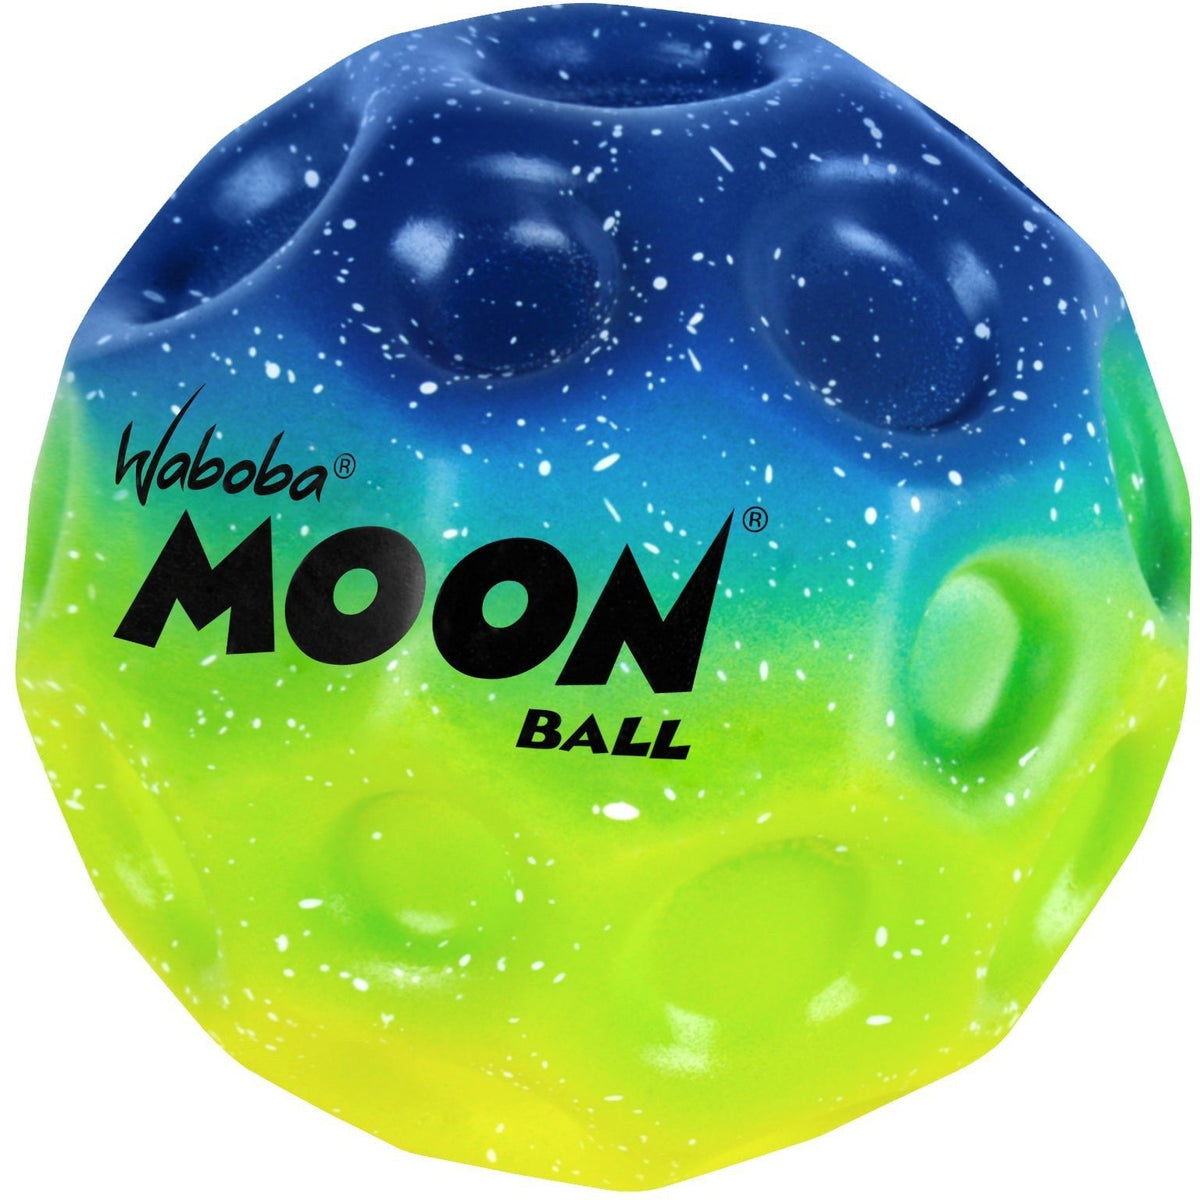 Waboba Rainbow Moon Balls Assortment